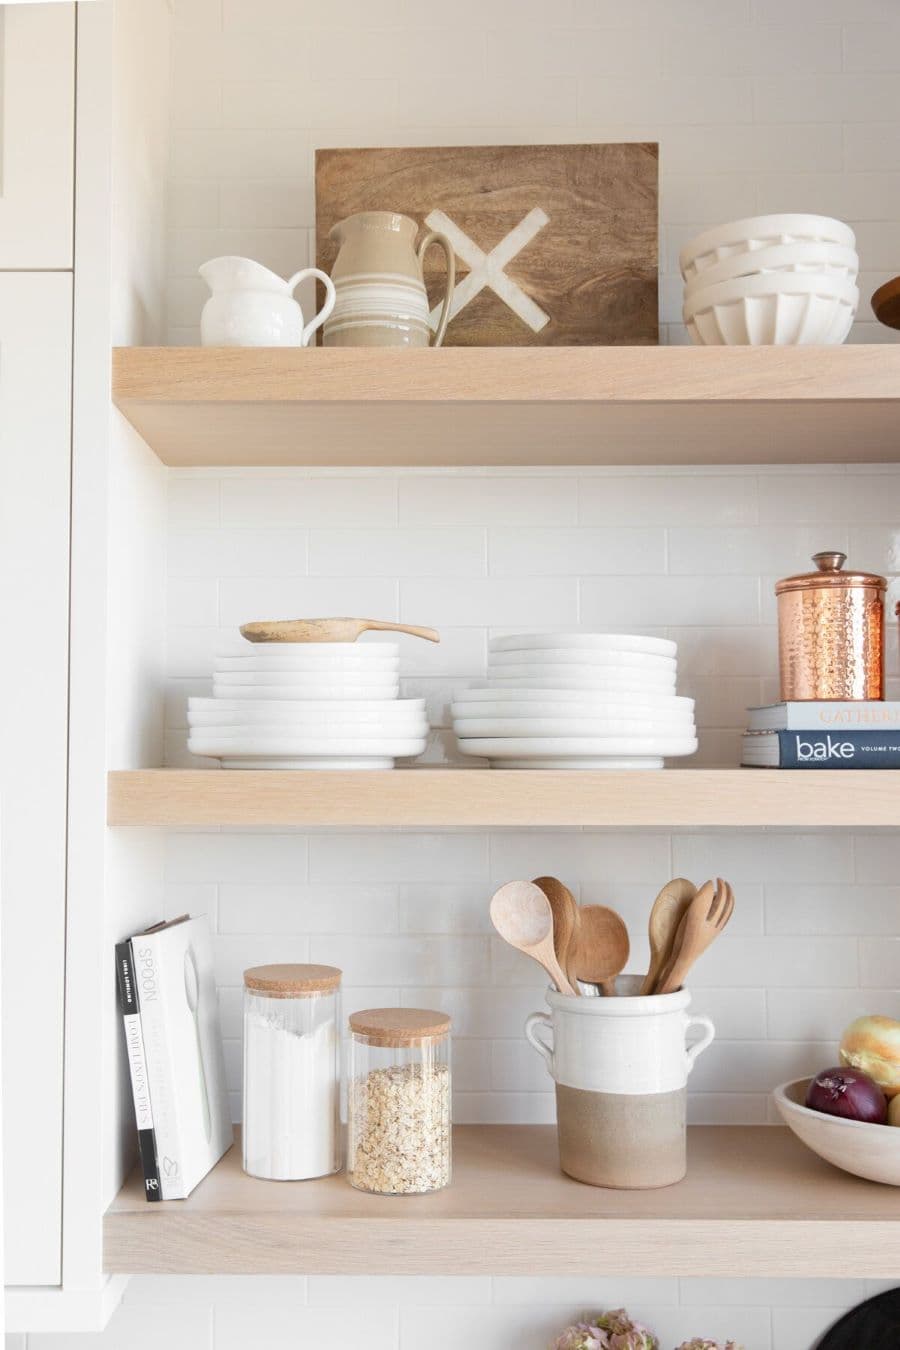 Detalle de tres repisas flotantes de una cocina. Son de madera clara y sobre ella hay vajilla de color blanco, platos, bowls, recipientes con cucharas de madera y frascos de vidrio. Muro blanco y mueble de despensa a un costado